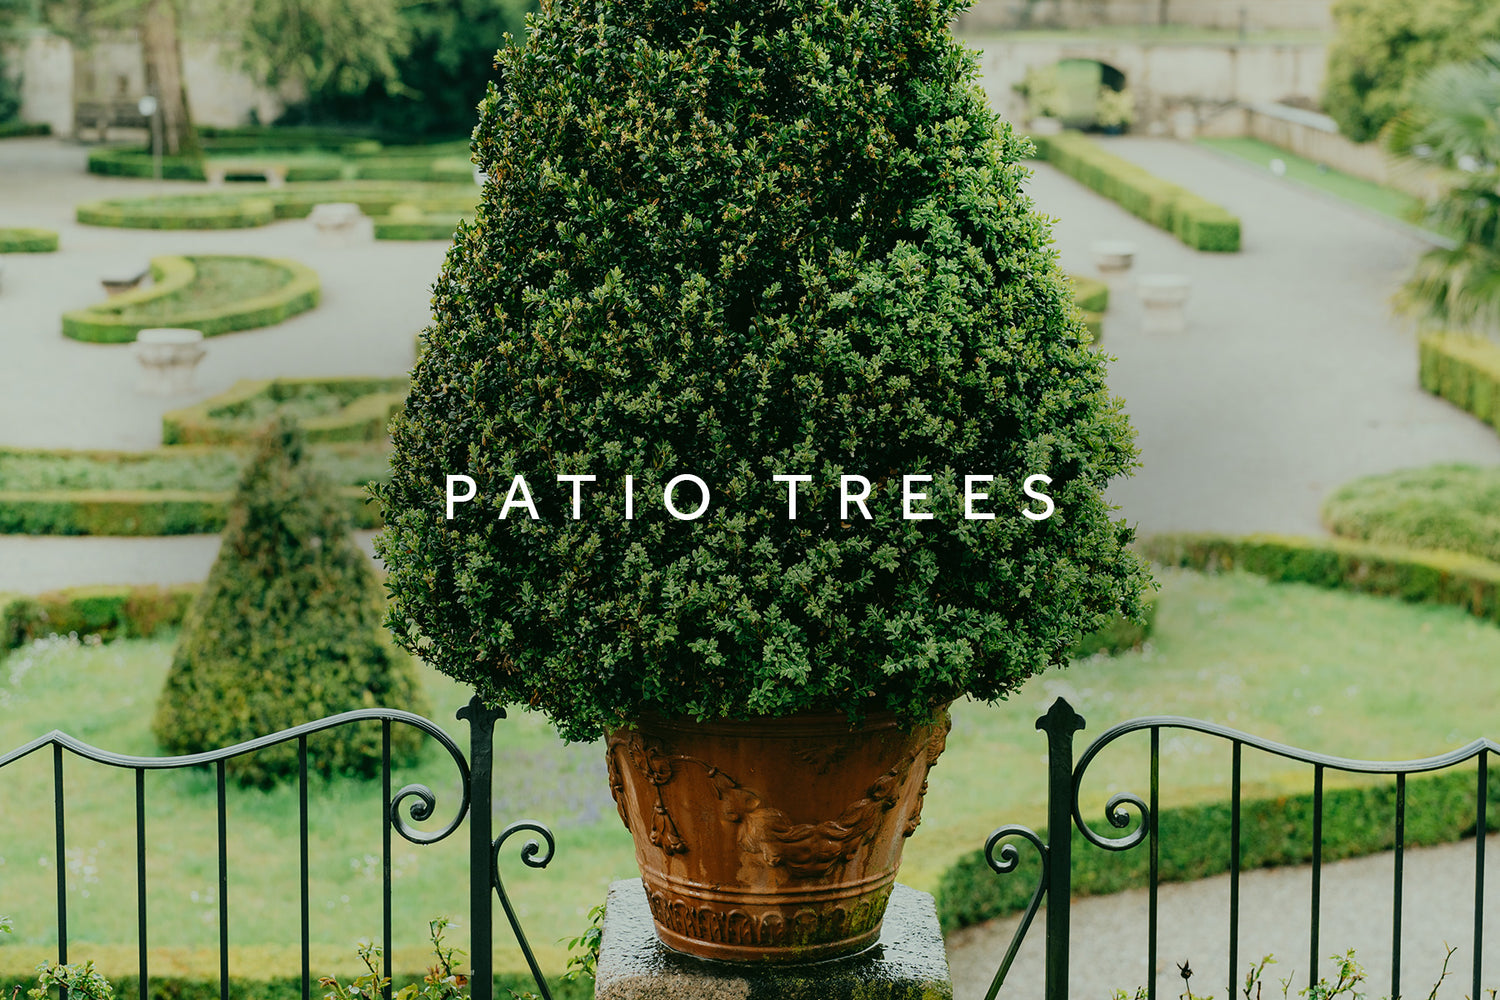 Patio trees